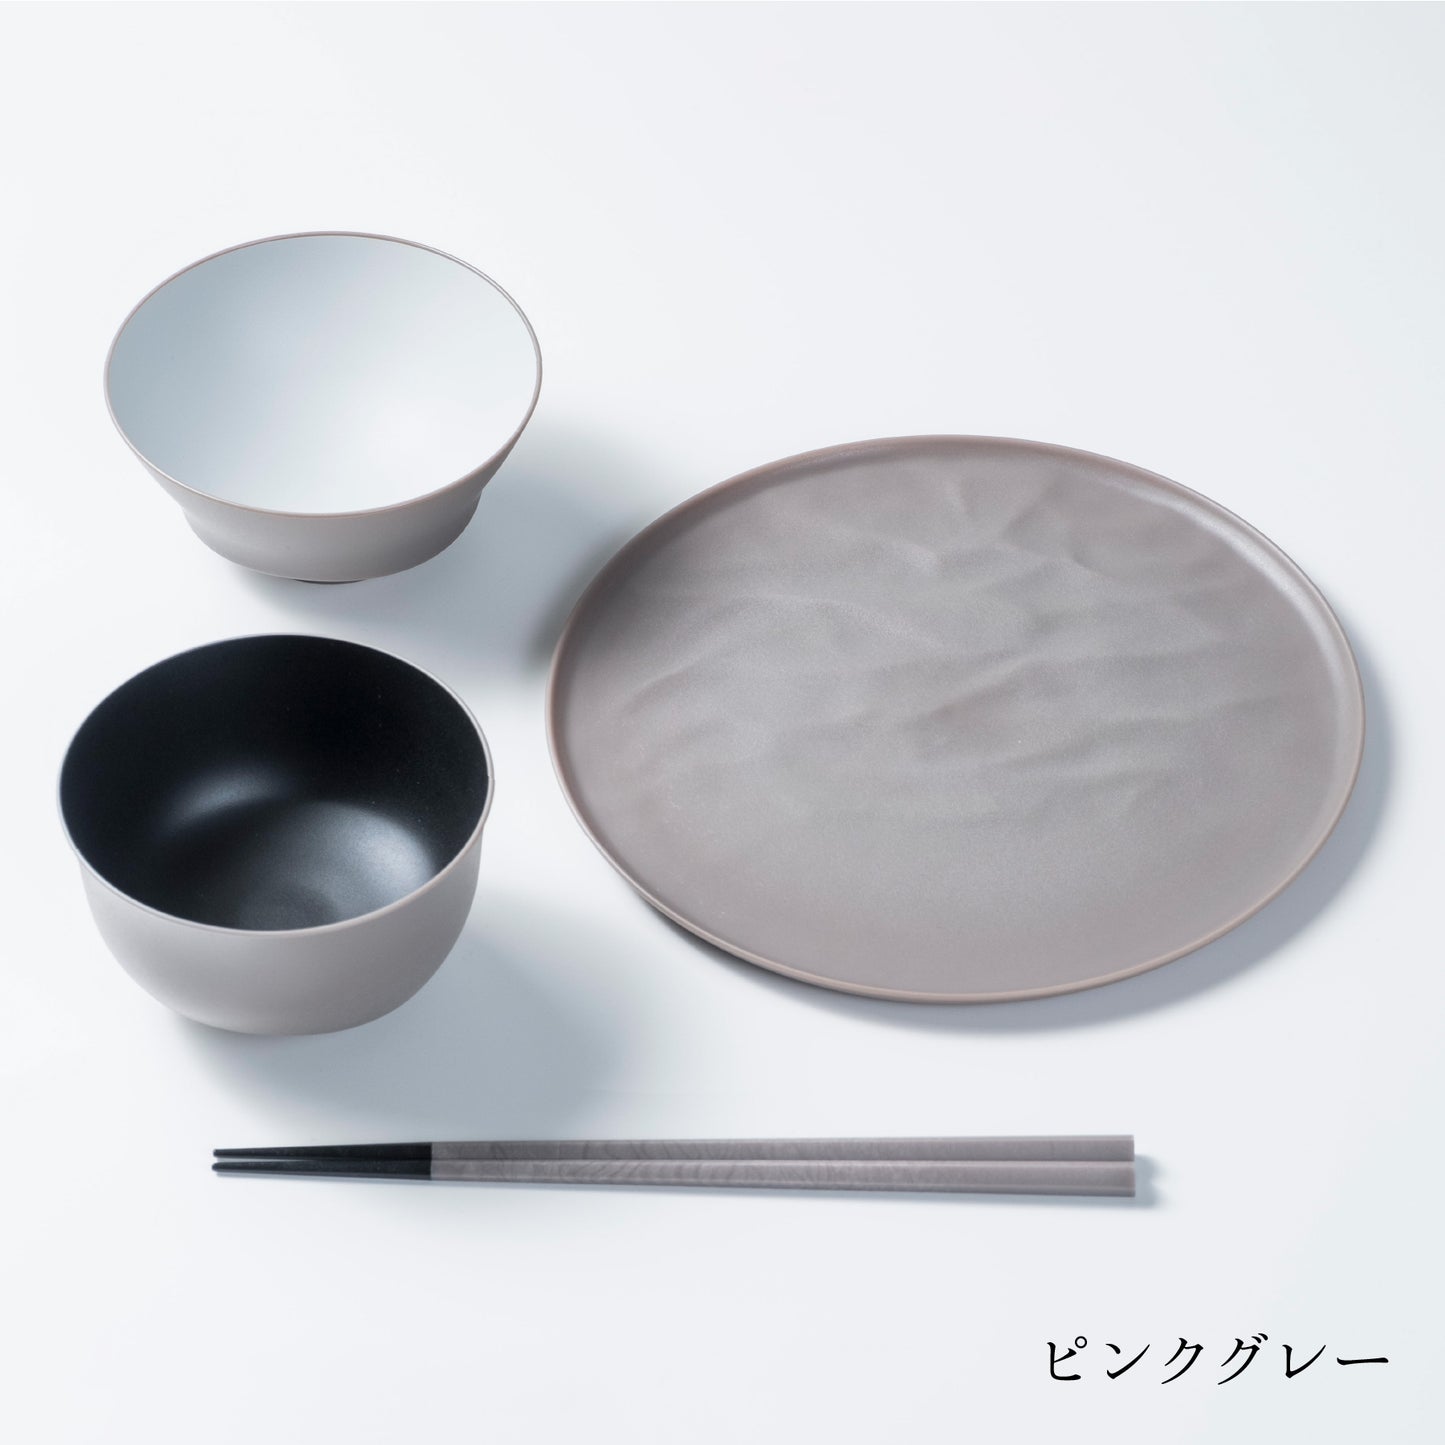 Teacup, soup bowl, chopsticks, medium plate wave set [up to 4 sets per person]